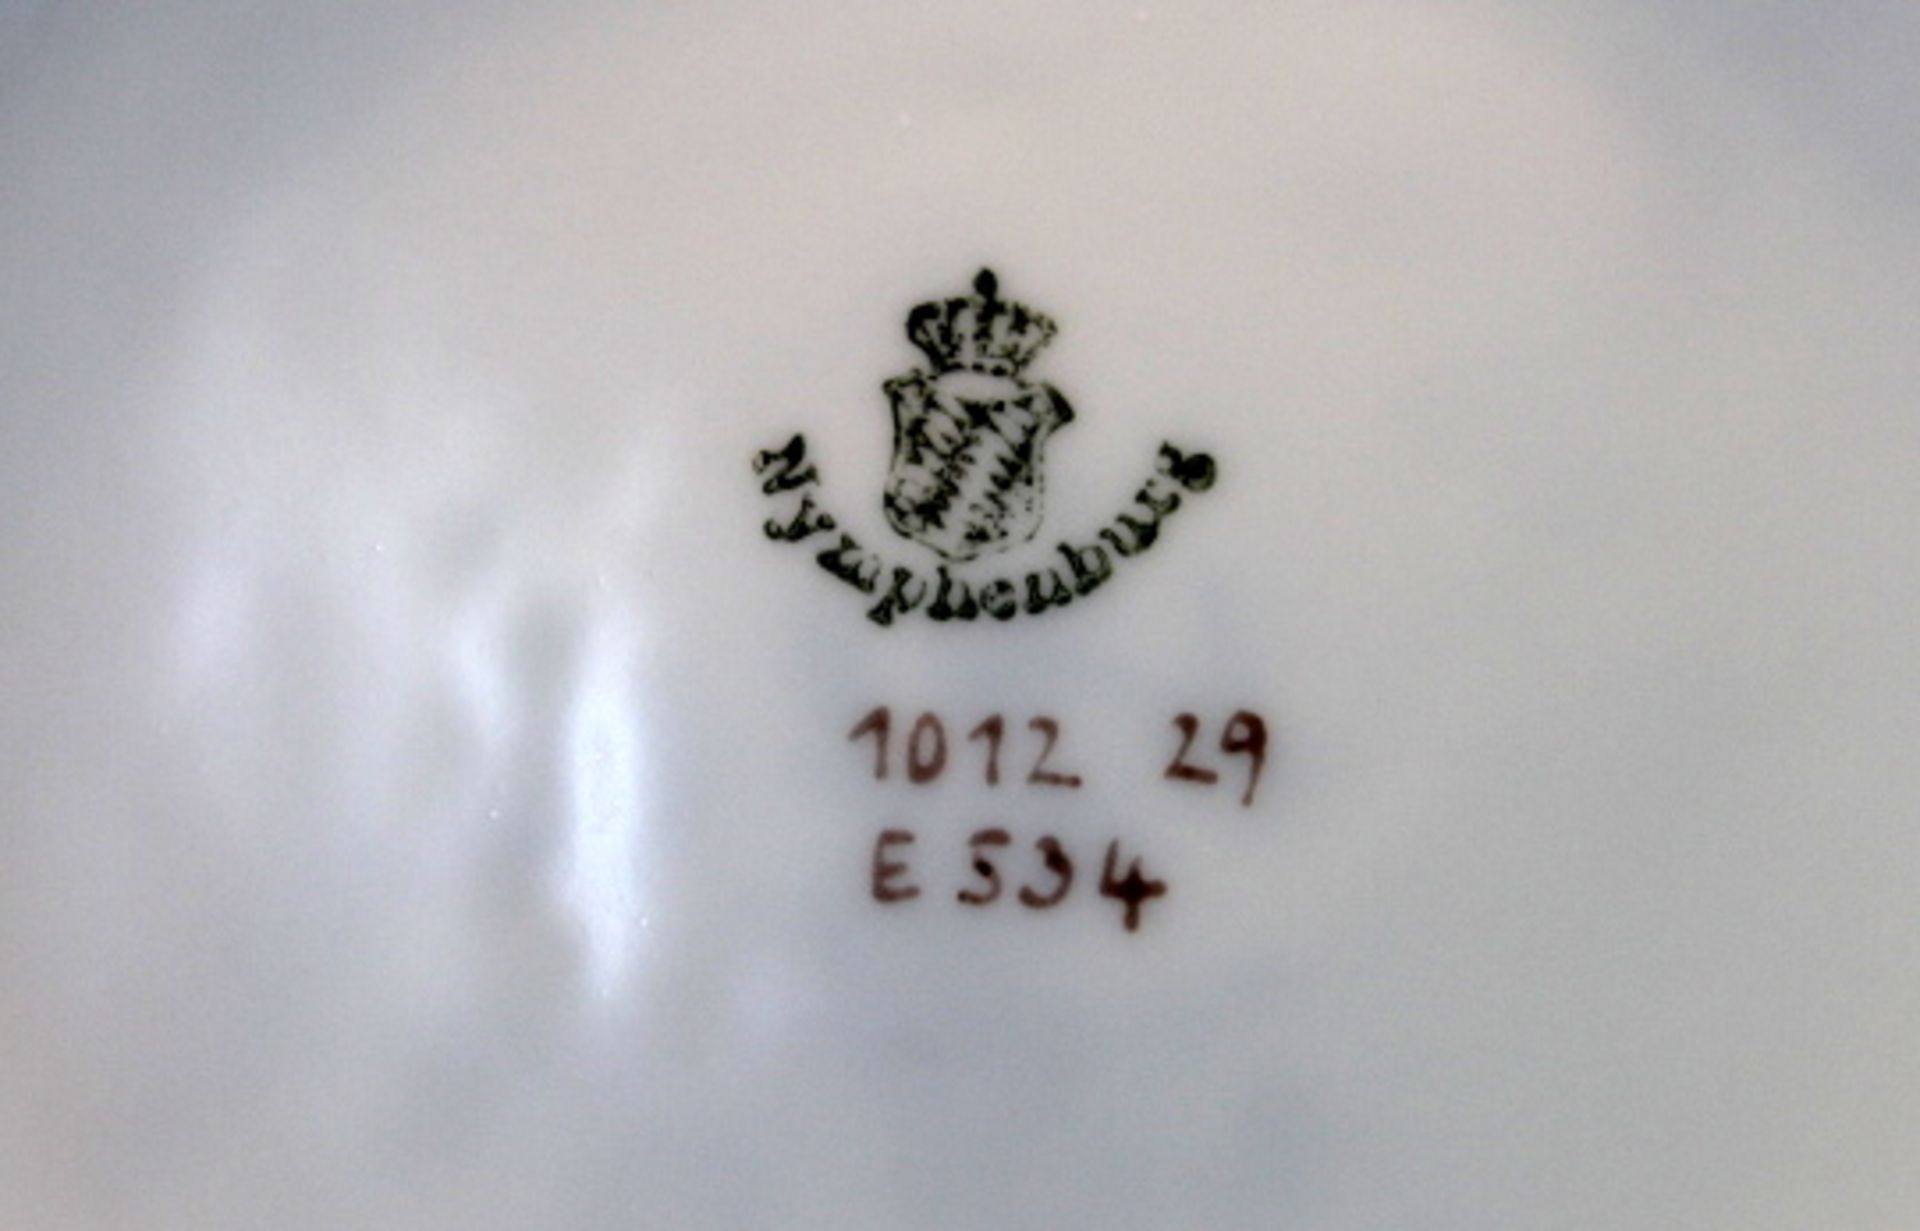 Nymphenburgumfangreiches KaffeeserviceKaffeekanne,Zuckerdose,Milchkännchen,Kuchenplatte,16 Tassen, - Image 2 of 2